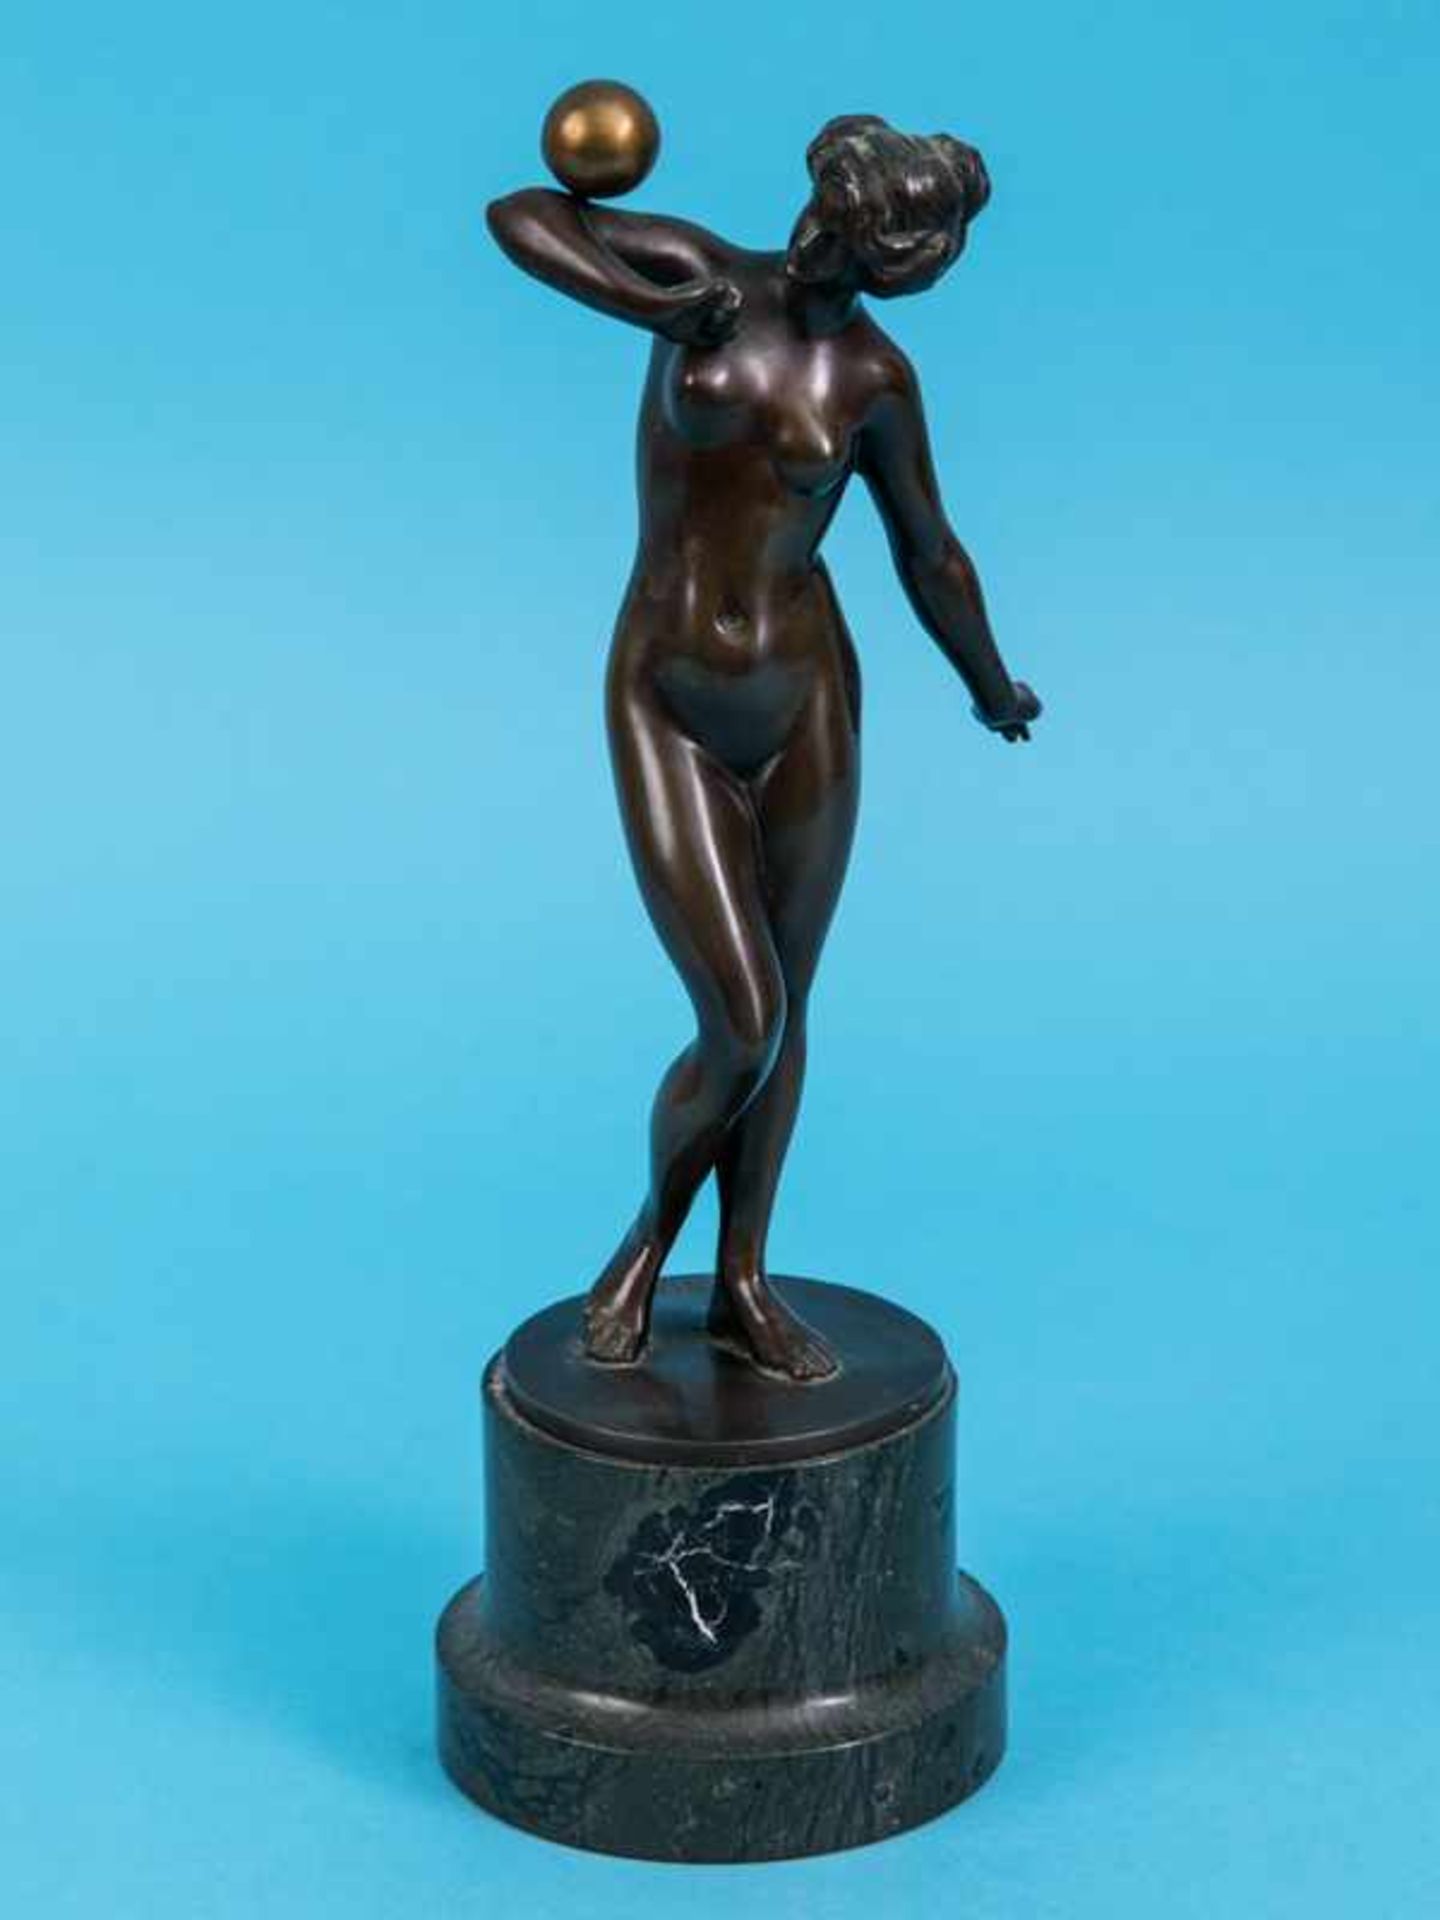 Bildhauer um 1900 (bez. "F. Richter"). Bronzeplastik "Kugelbalancierender weiblicher Akt" auf